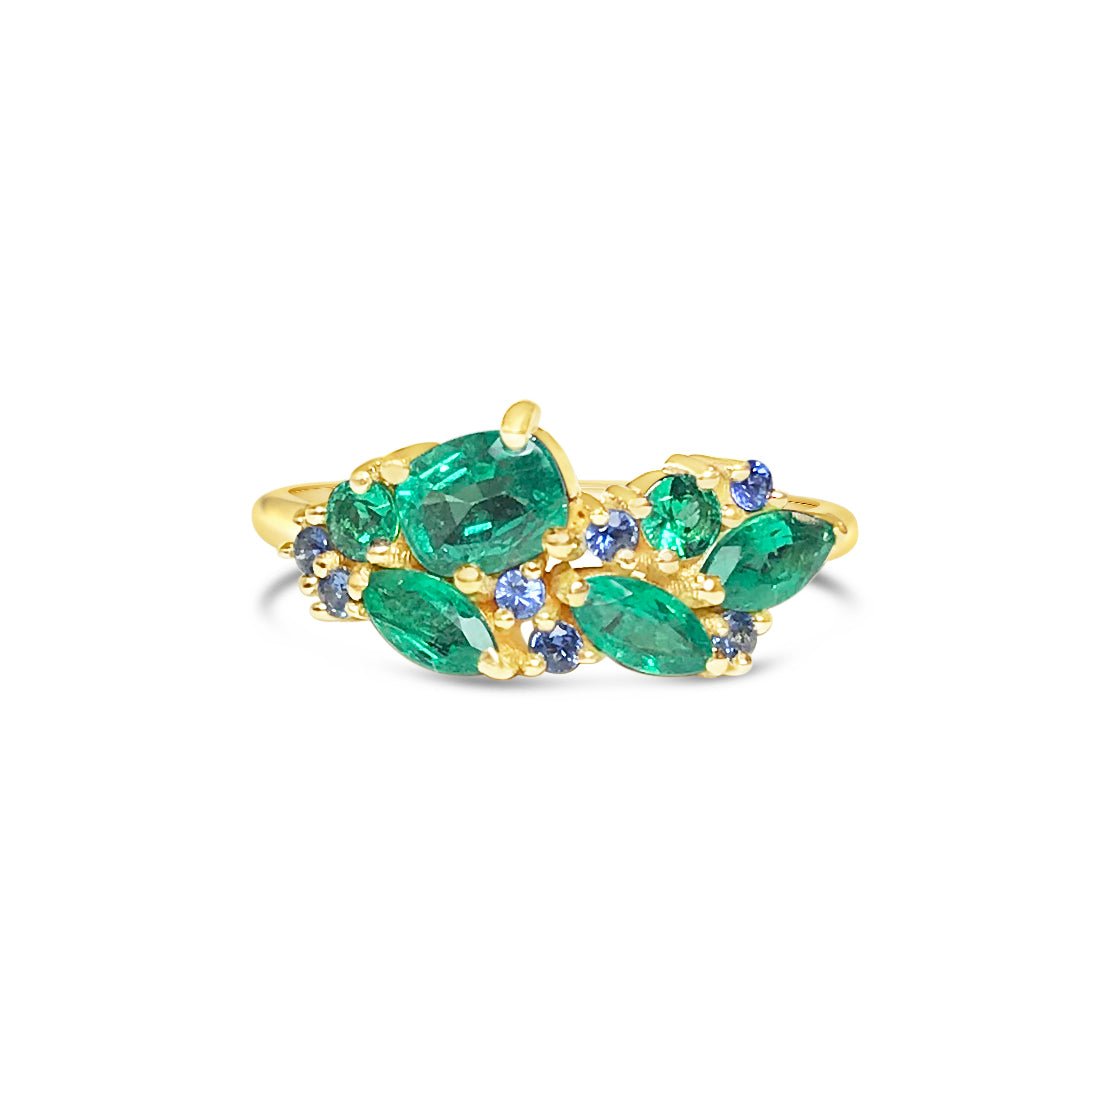 TOSCANA || emerald and sapphire ring - LOFT.bijoux || Custom jewelry & wedding rings / Bijoux sur mesure & bagues de mariage || Montreal